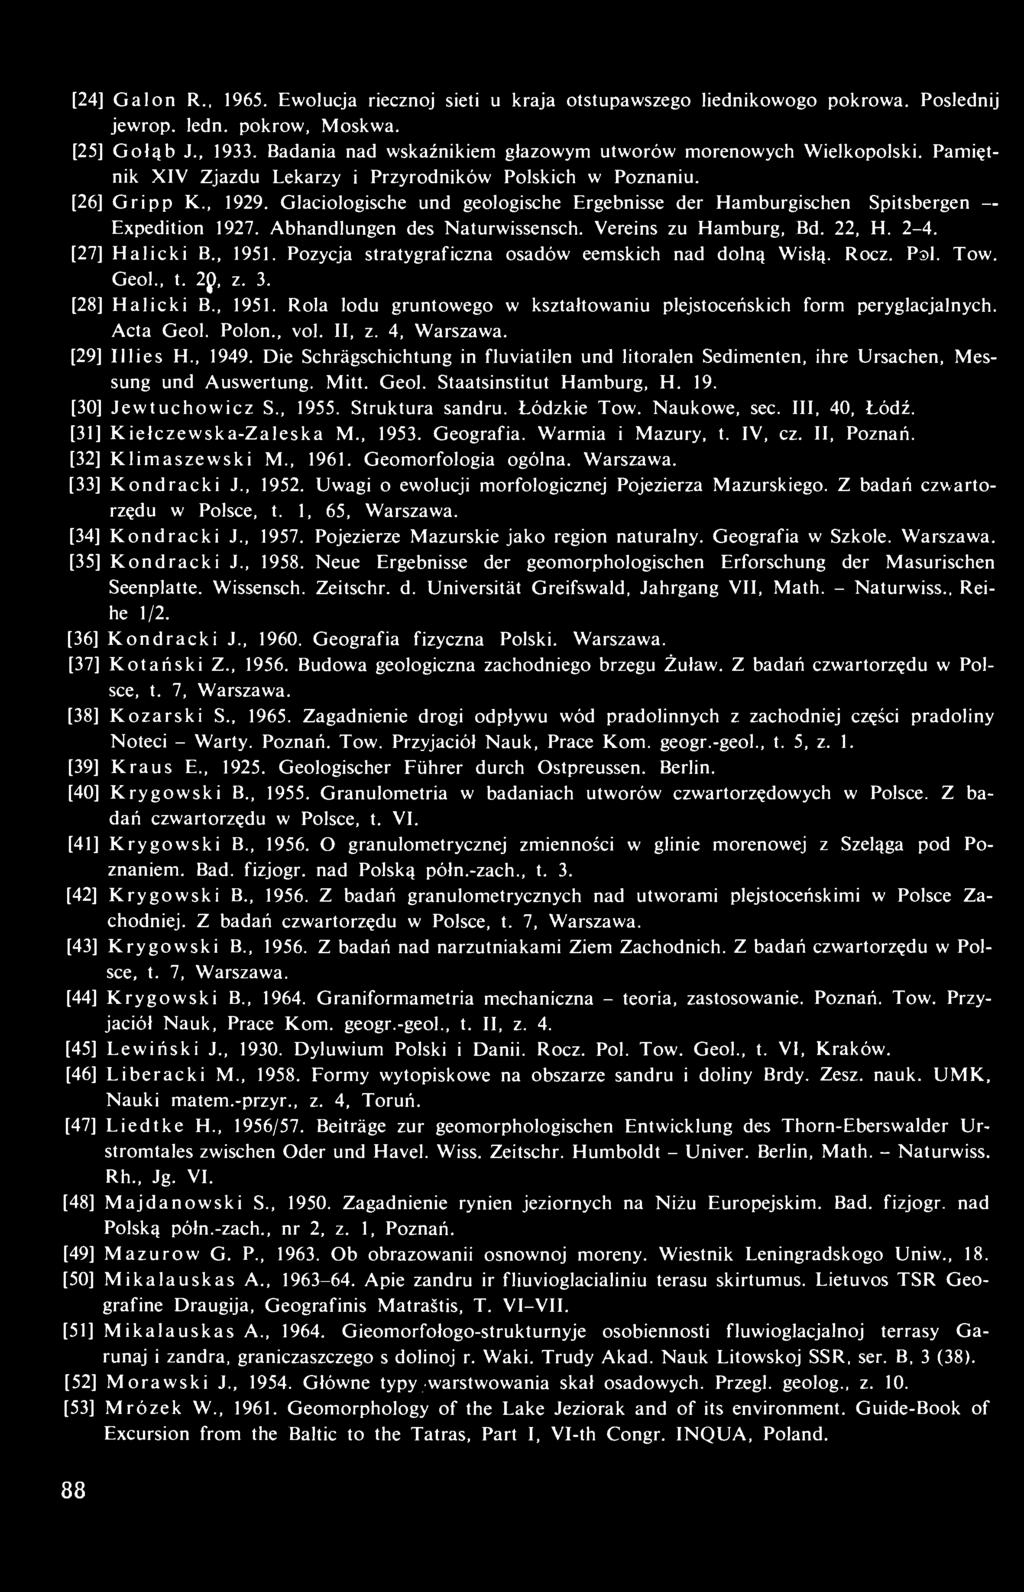 Glaciologische und geologische Ergebnisse der Hamburgischen Spitsbergen Expedition 1927. Abhandlungen des Naturwissensch. Vereins zu Hamburg, Bd. 22, H. 2-4. [27] Halicki B., 1951.